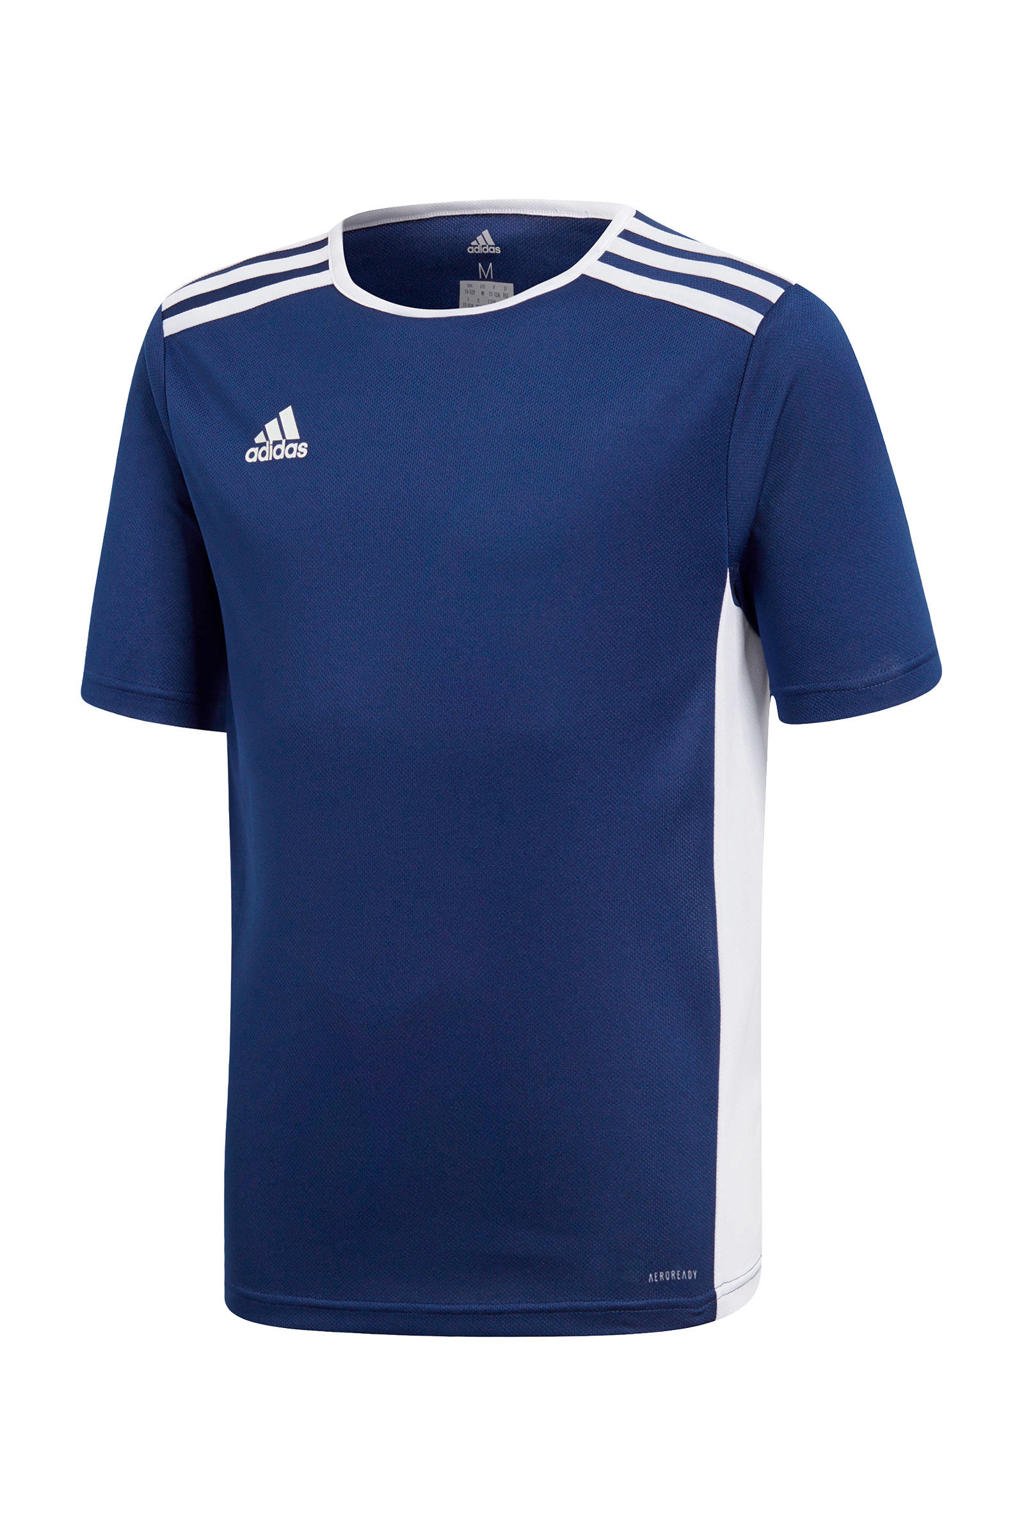 adidas Performance Junior  voetbalshirt donkerblauw